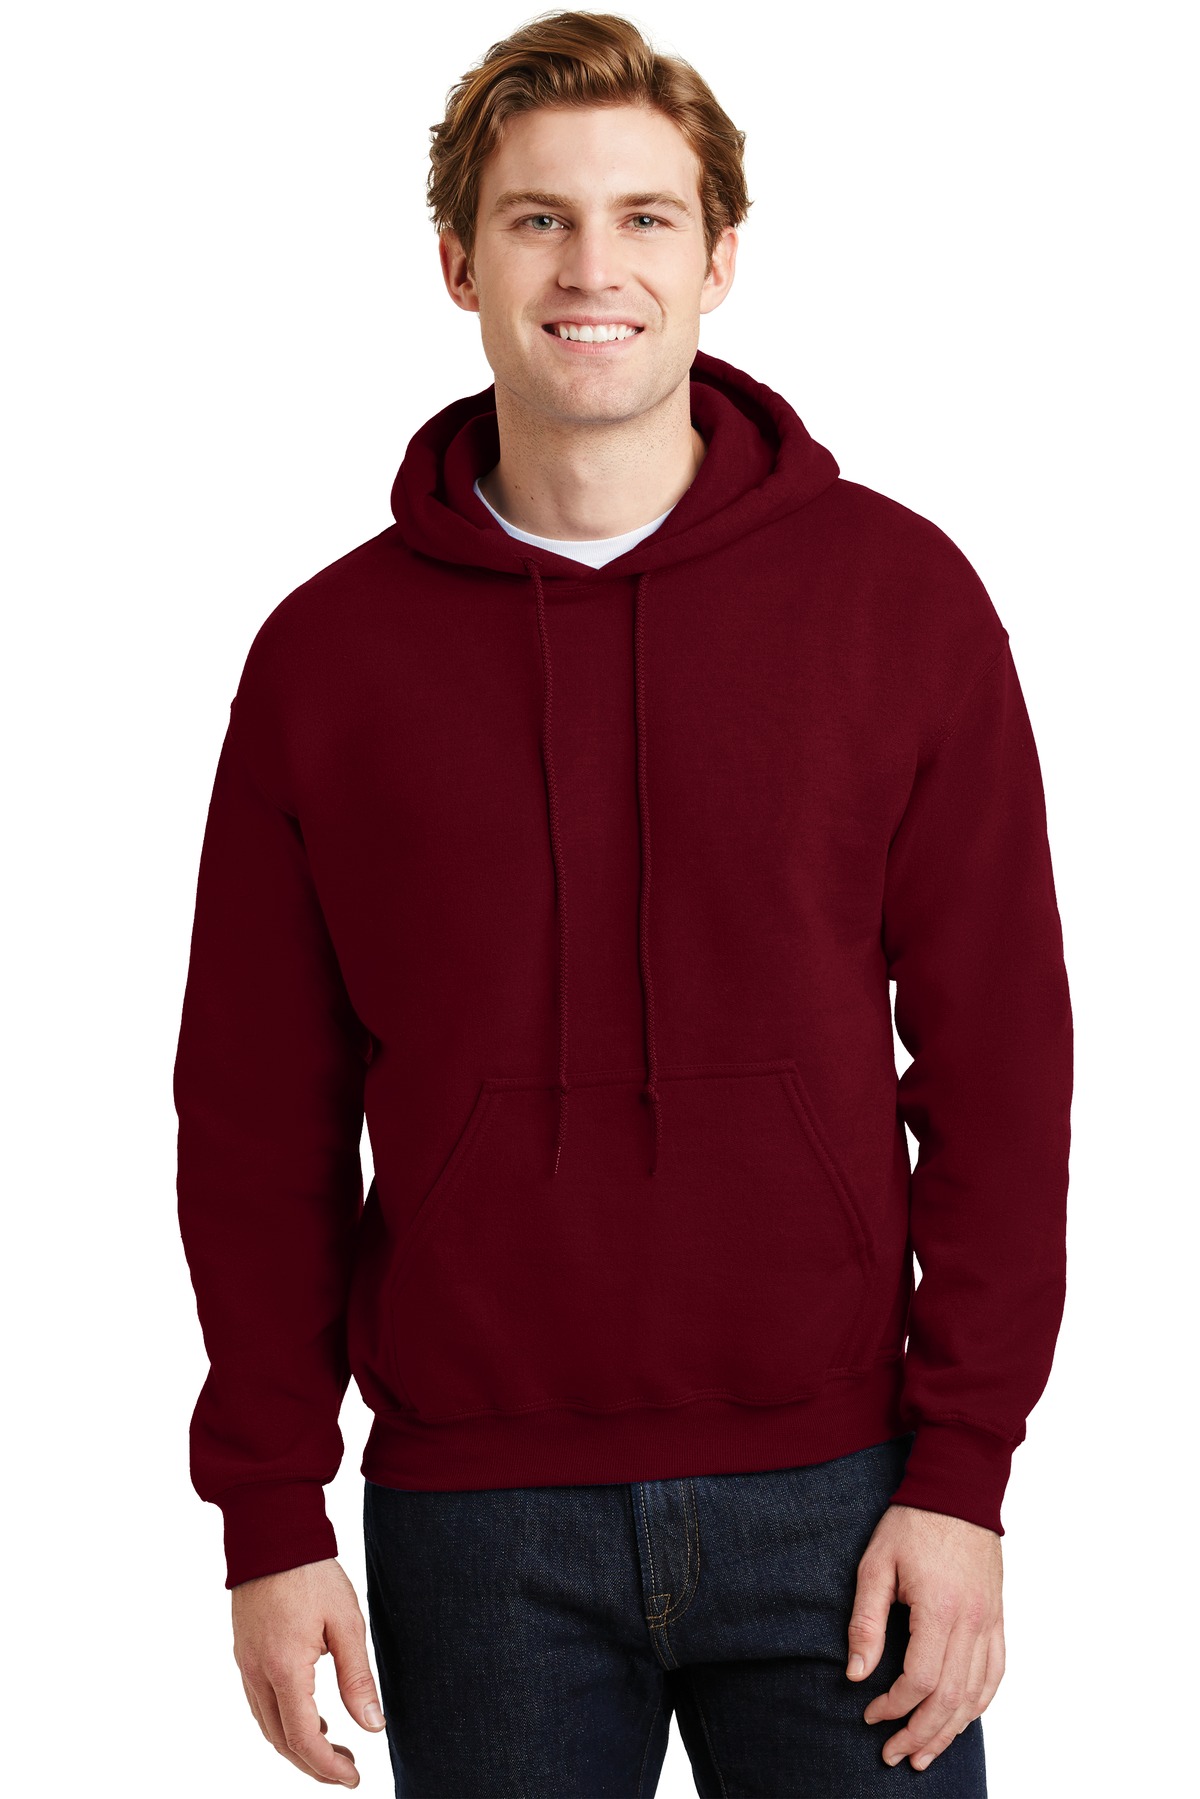 https://images.shirtspace.com/fullsize/FRK6PTqlybuGuPhX46aC9w%3D%3D/59002/1221-gildan-g185-heavy-blend-hooded-sweatshirt-front-garnet.jpg